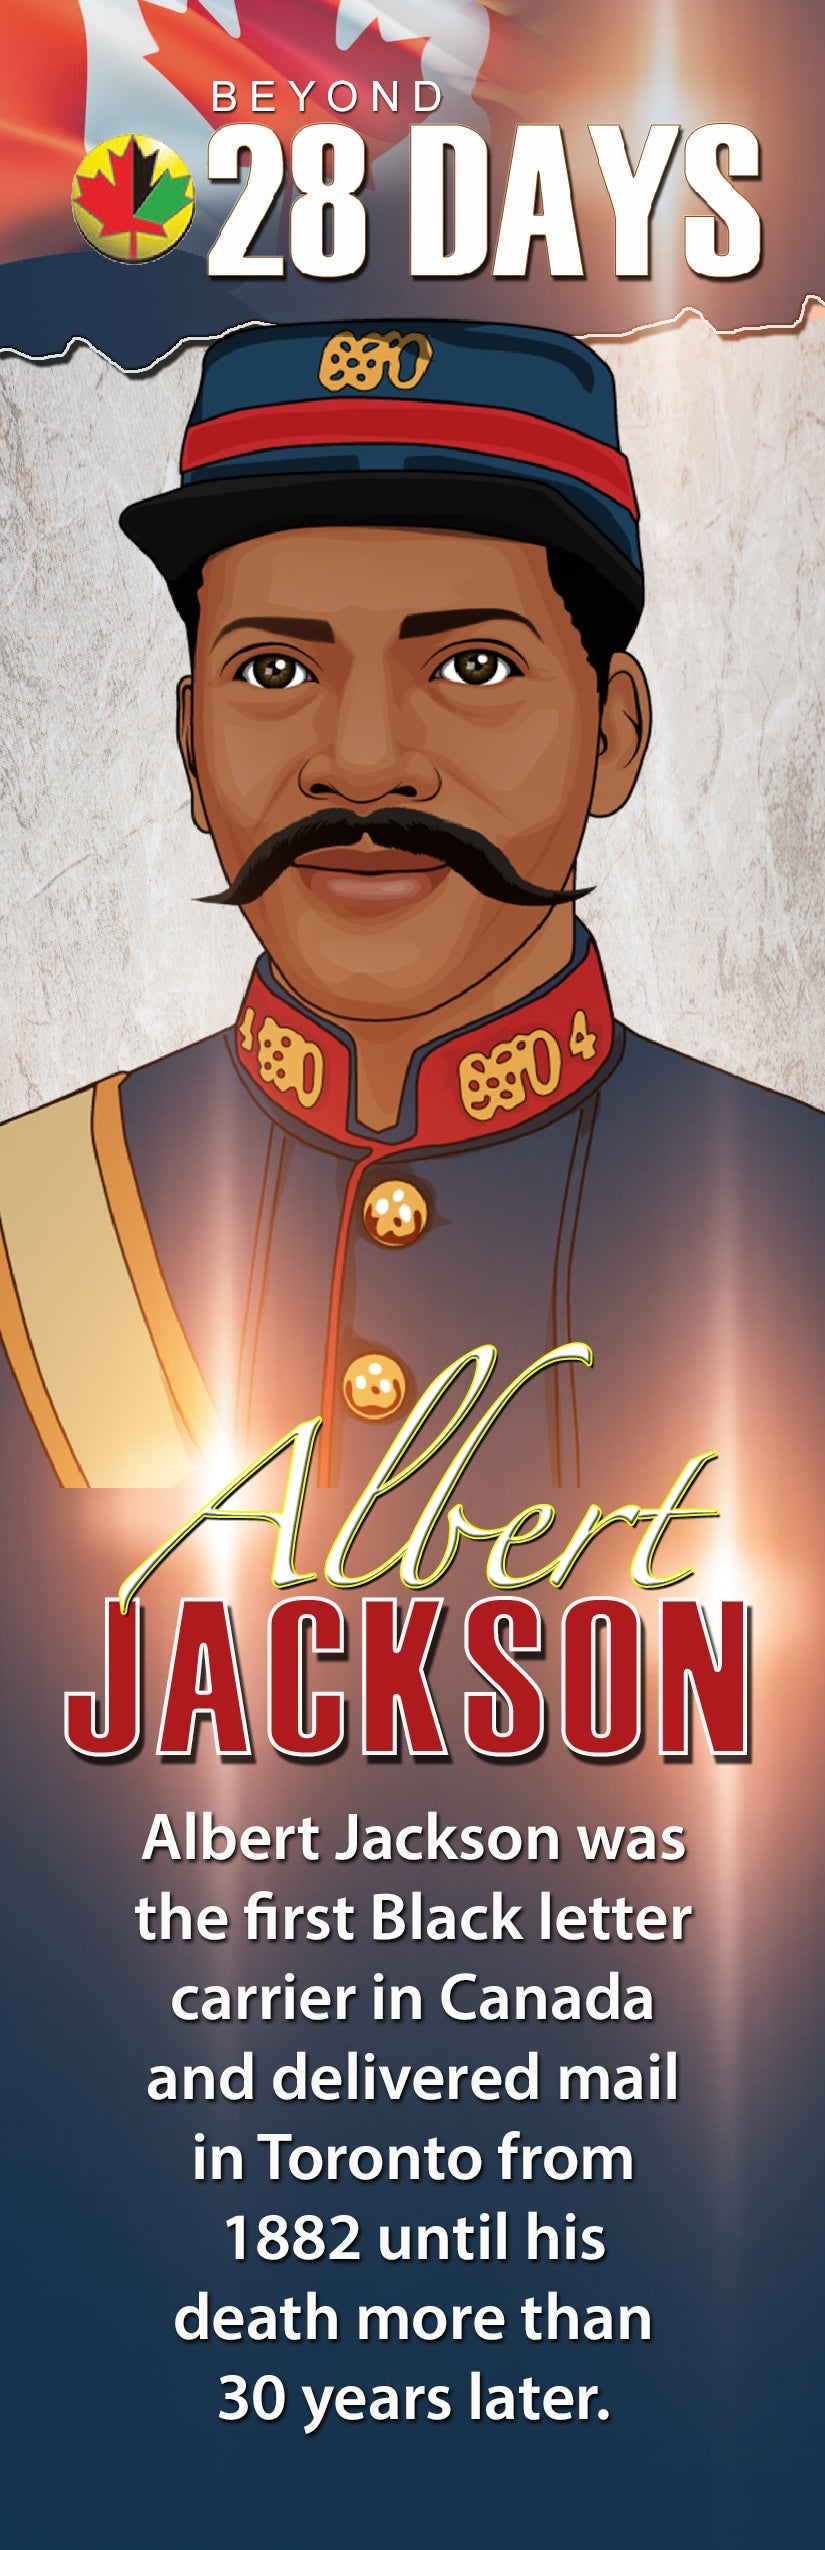 Mail Carrier Albert Jackson